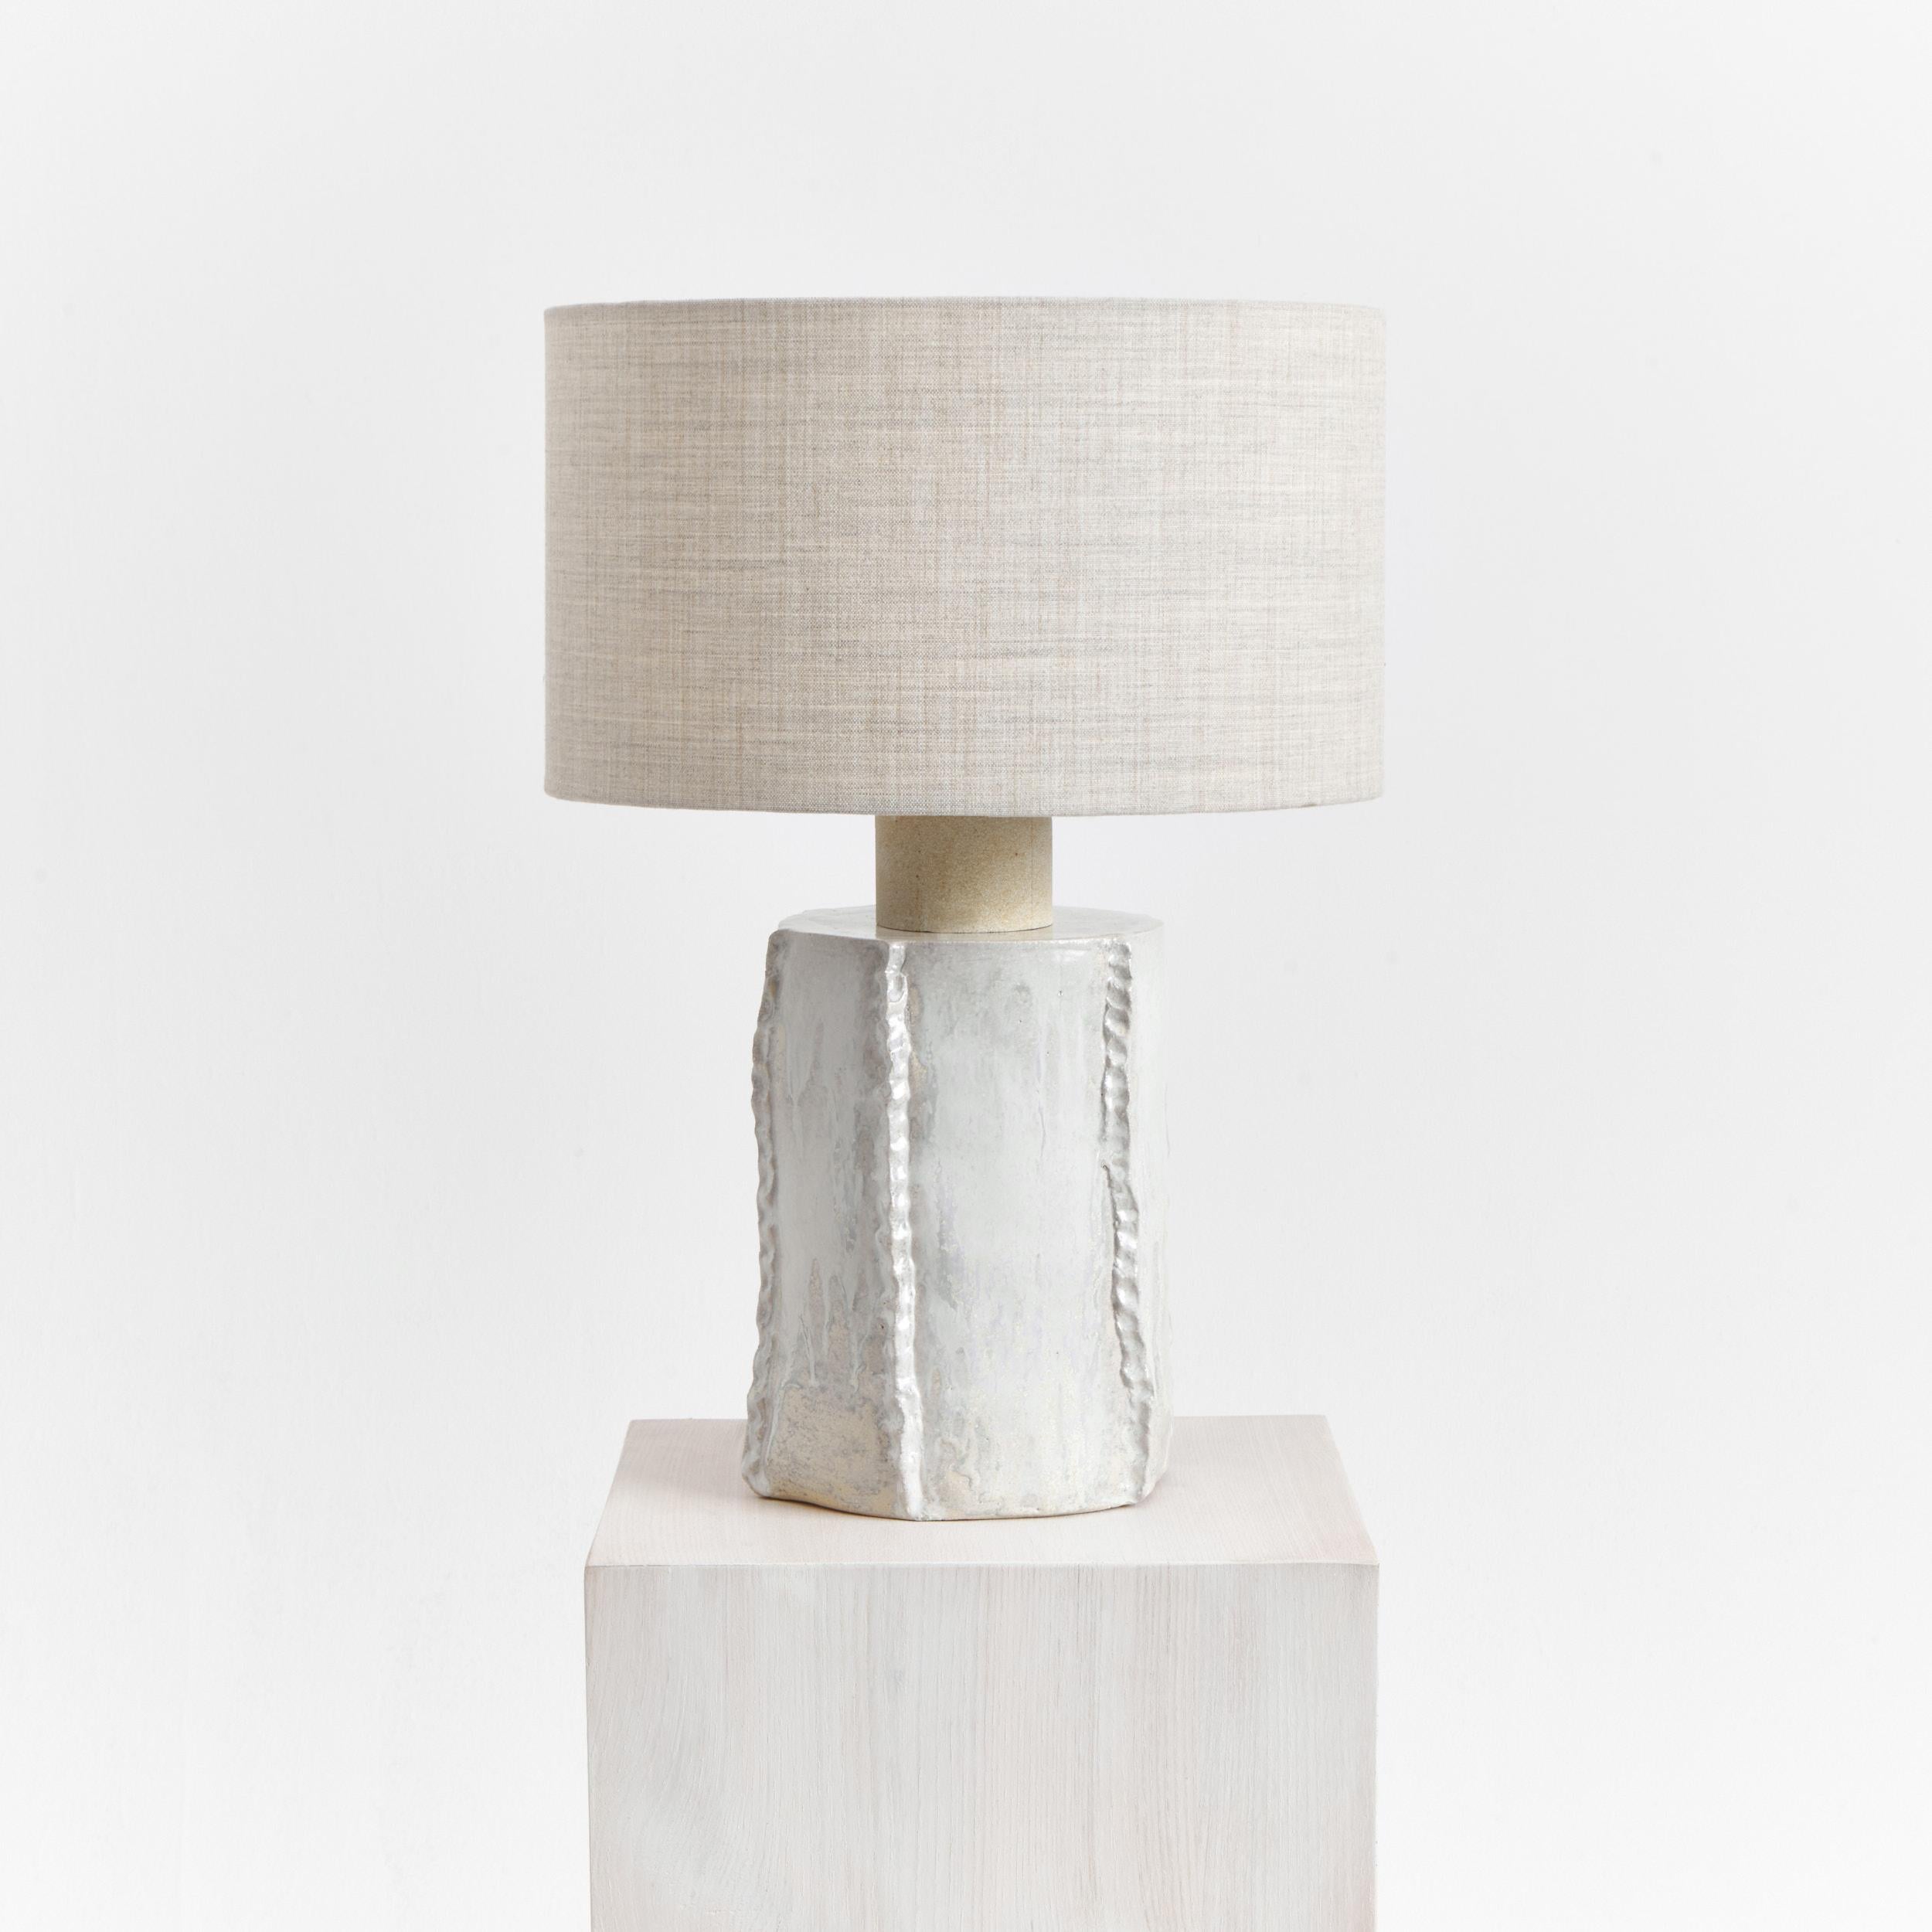 Totem Tischleuchte in Rocquefort
Entworfen von Projekt 213A im Jahr 2023

Handwerkliche Keramikleuchte, hergestellt in der eigenen Keramikwerkstatt von project 213A, mit einem runden Lampenschirm aus 90% Wolle und 10% schlimmstem Nylon.
Jedes Stück